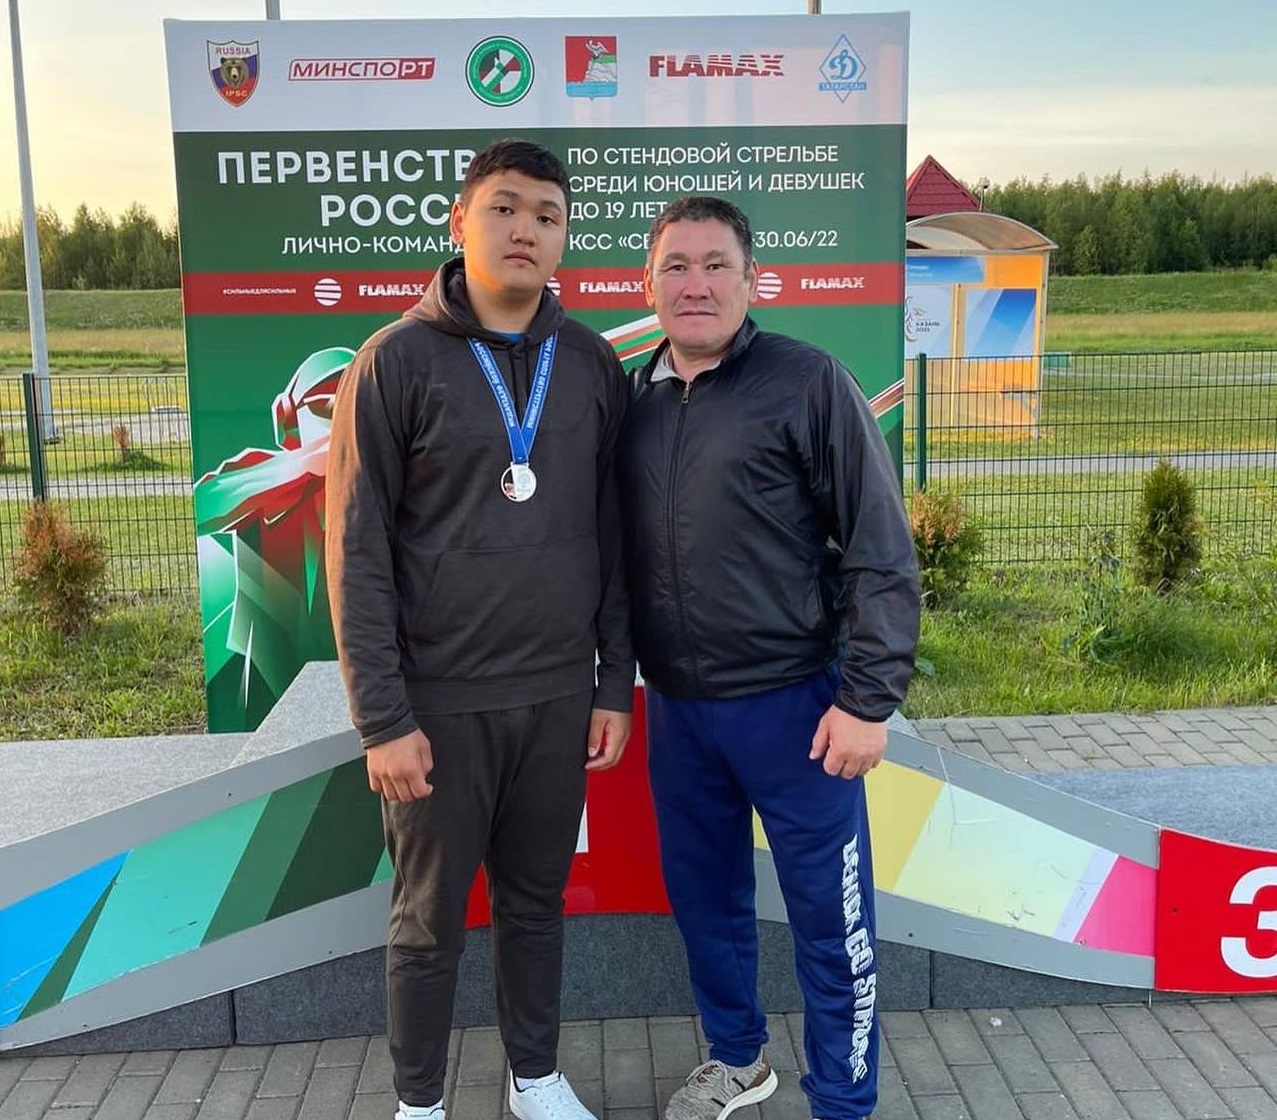 Якутянин стал серебряным призером первенства РФ по стендовой стрельбе